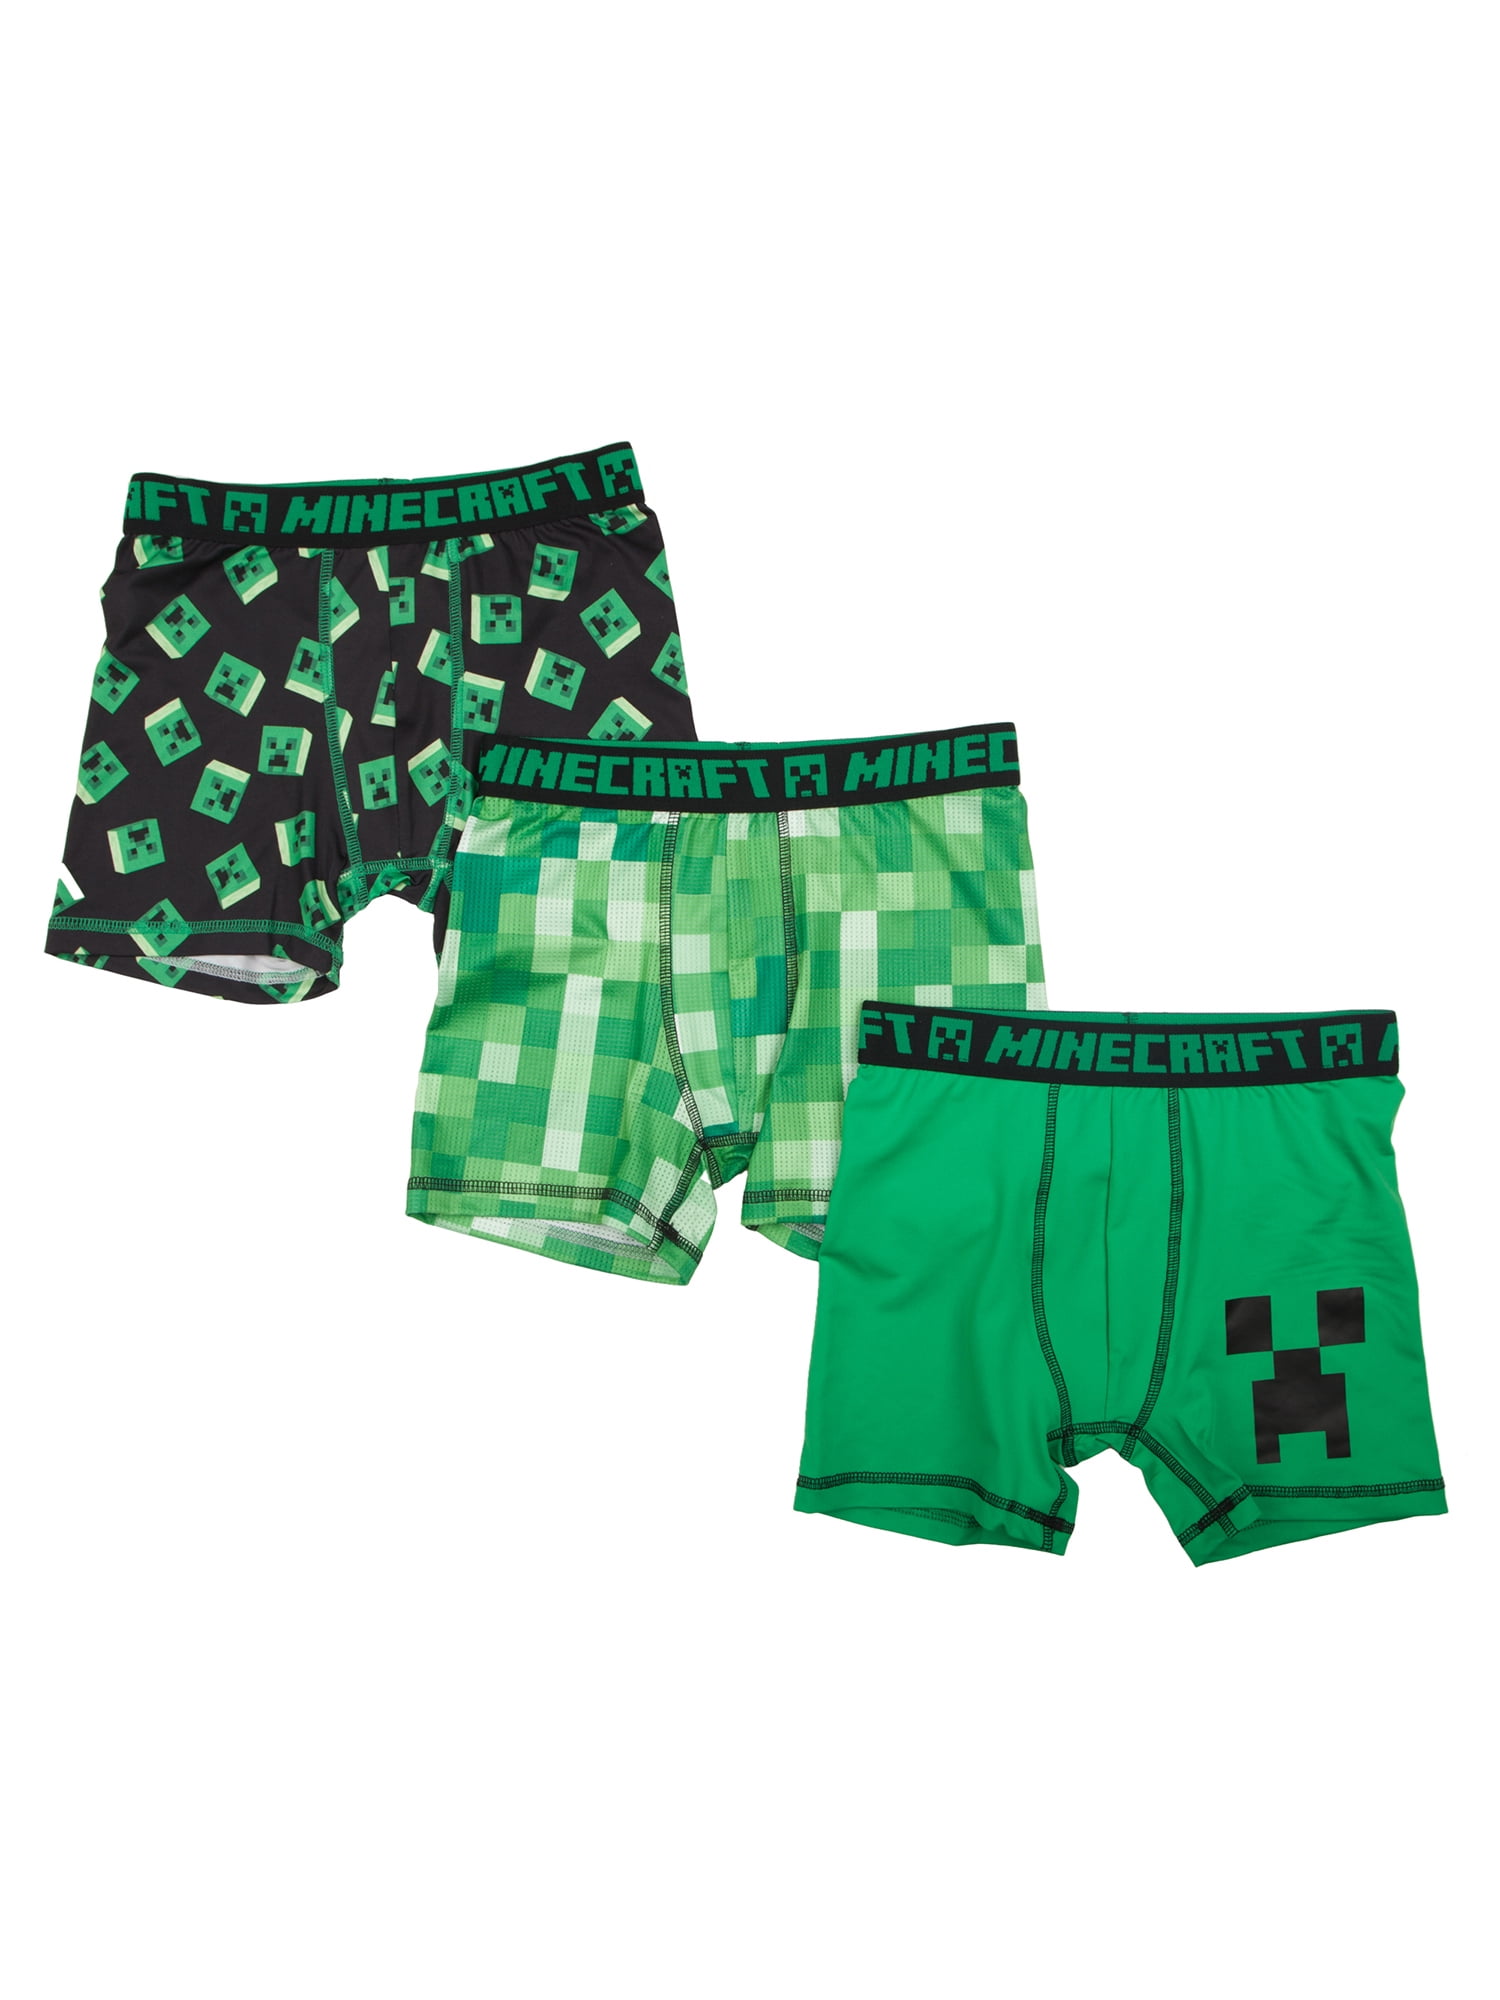 Boys Minecraft Pants Underwear Briefs 5 Pairs Green Grey Green 8-15 Years